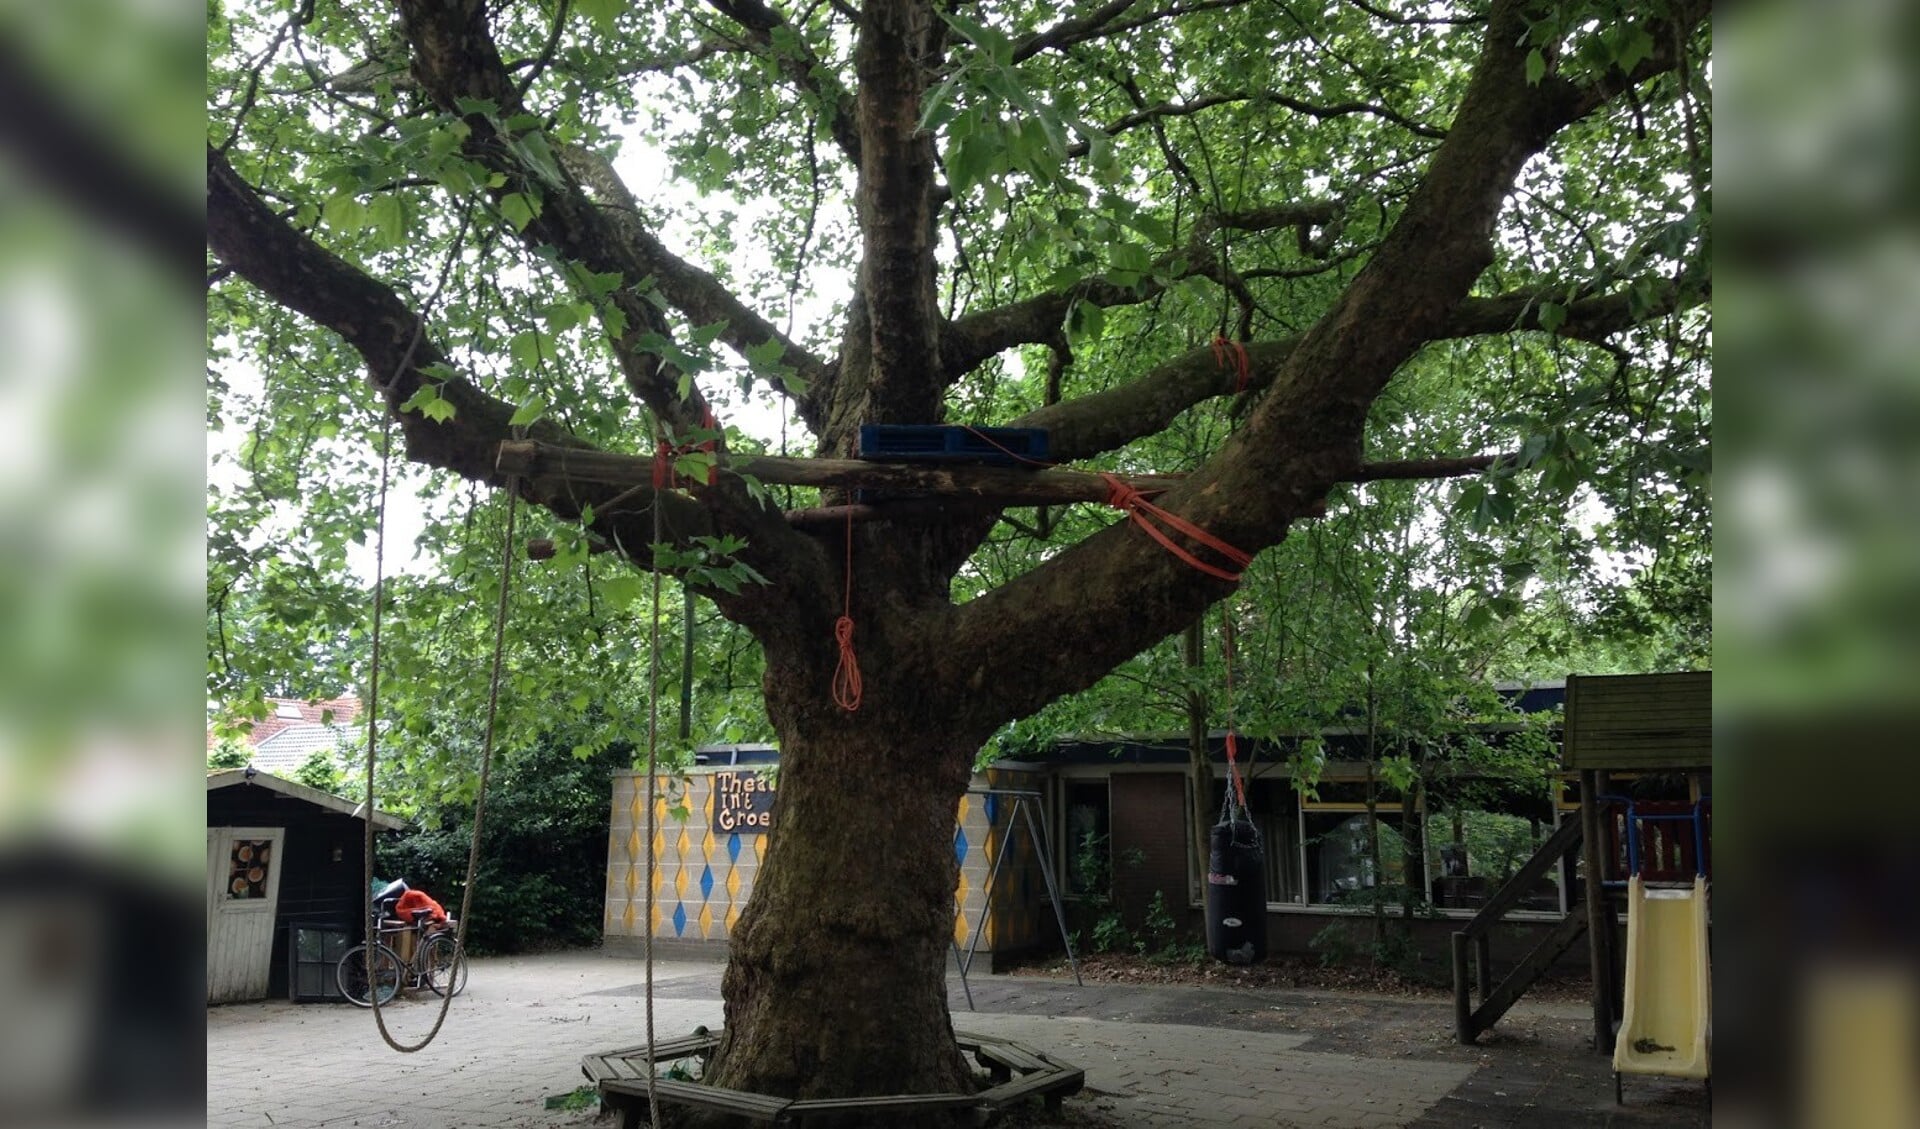  De bedoelde boom komt voor in het 'Totaal overzicht bijzondere bomen van de gemeente De Bilt 2015' als de 'solitaire plataan aan de Groenekanseweg 32'.